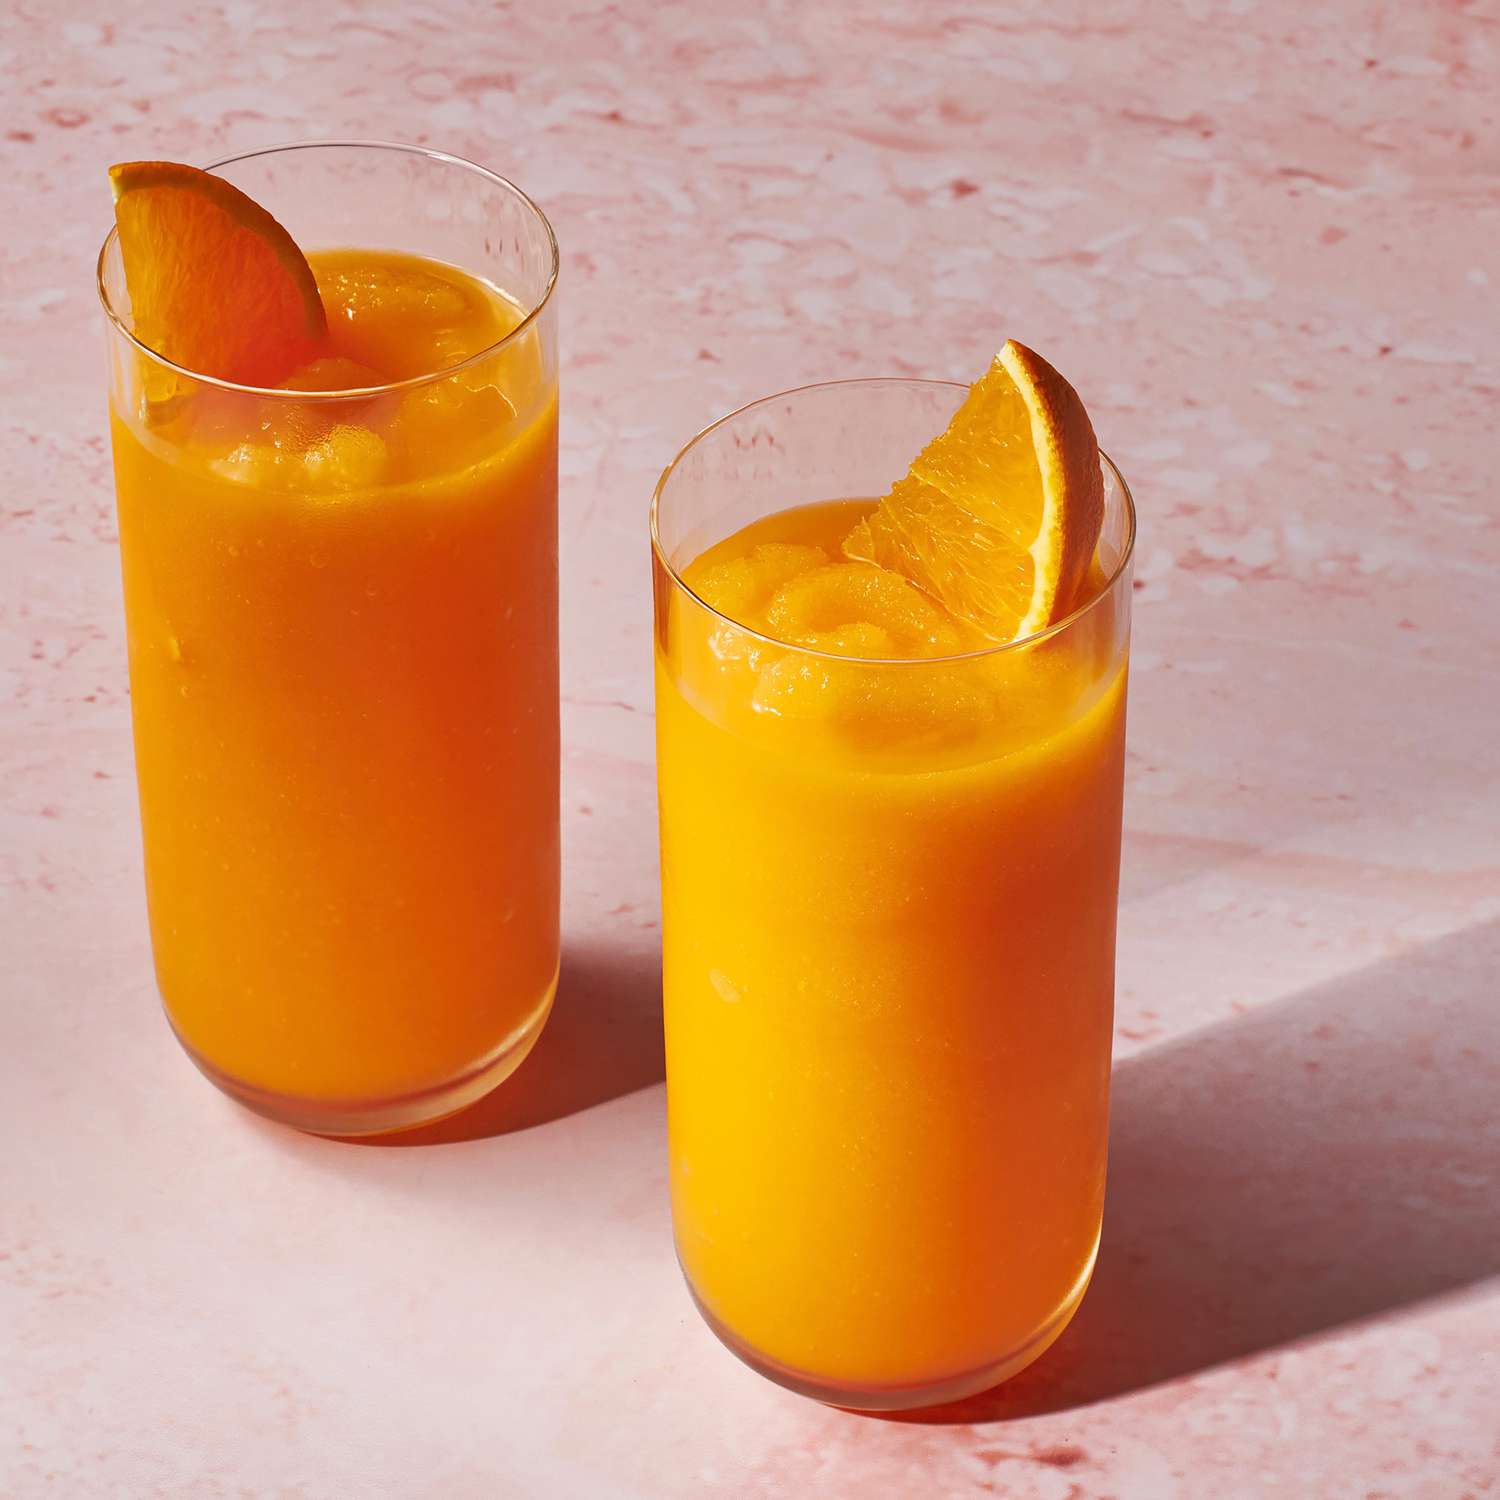 Foto de la receta de dos vasos de batido de zanahoria con rodajas de naranja